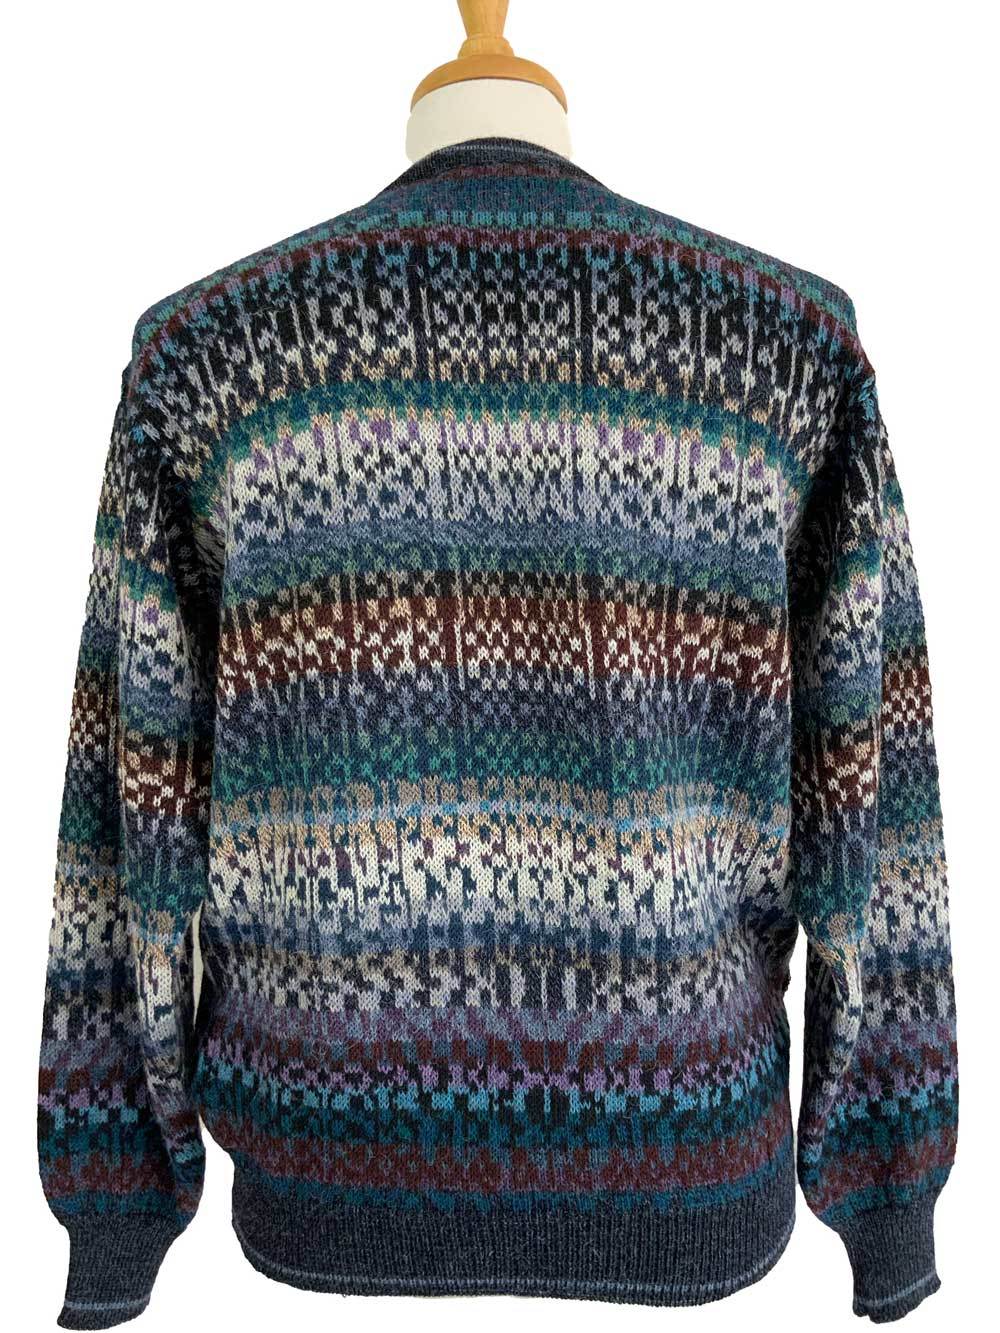 Owen V-Neck Sweater Teal Multi - 2